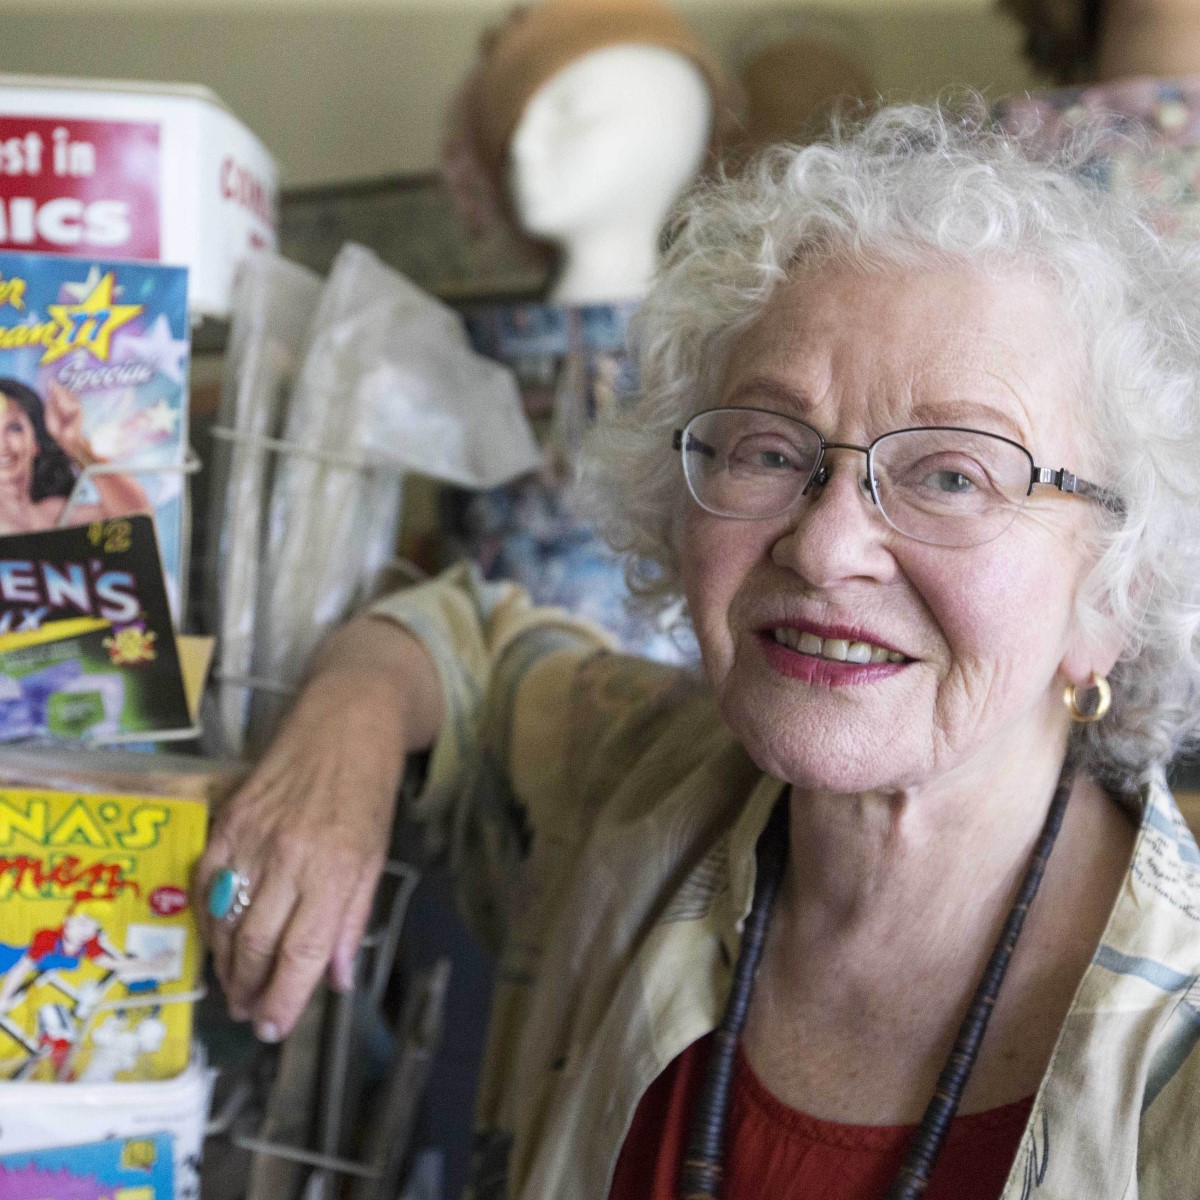 Addio ad una Leggenda dei Comics.
Ci ha lasciato, a 85 anni, #TrinaRobbins, fumettista e storica nota per essere stata la prima donna a disegnare Wonder Woman, e aver creato l'iconico costume di Vampirella, poi ritratto da Frank Frazetta sulla copertina del #1 del 1969.

#Fumetti